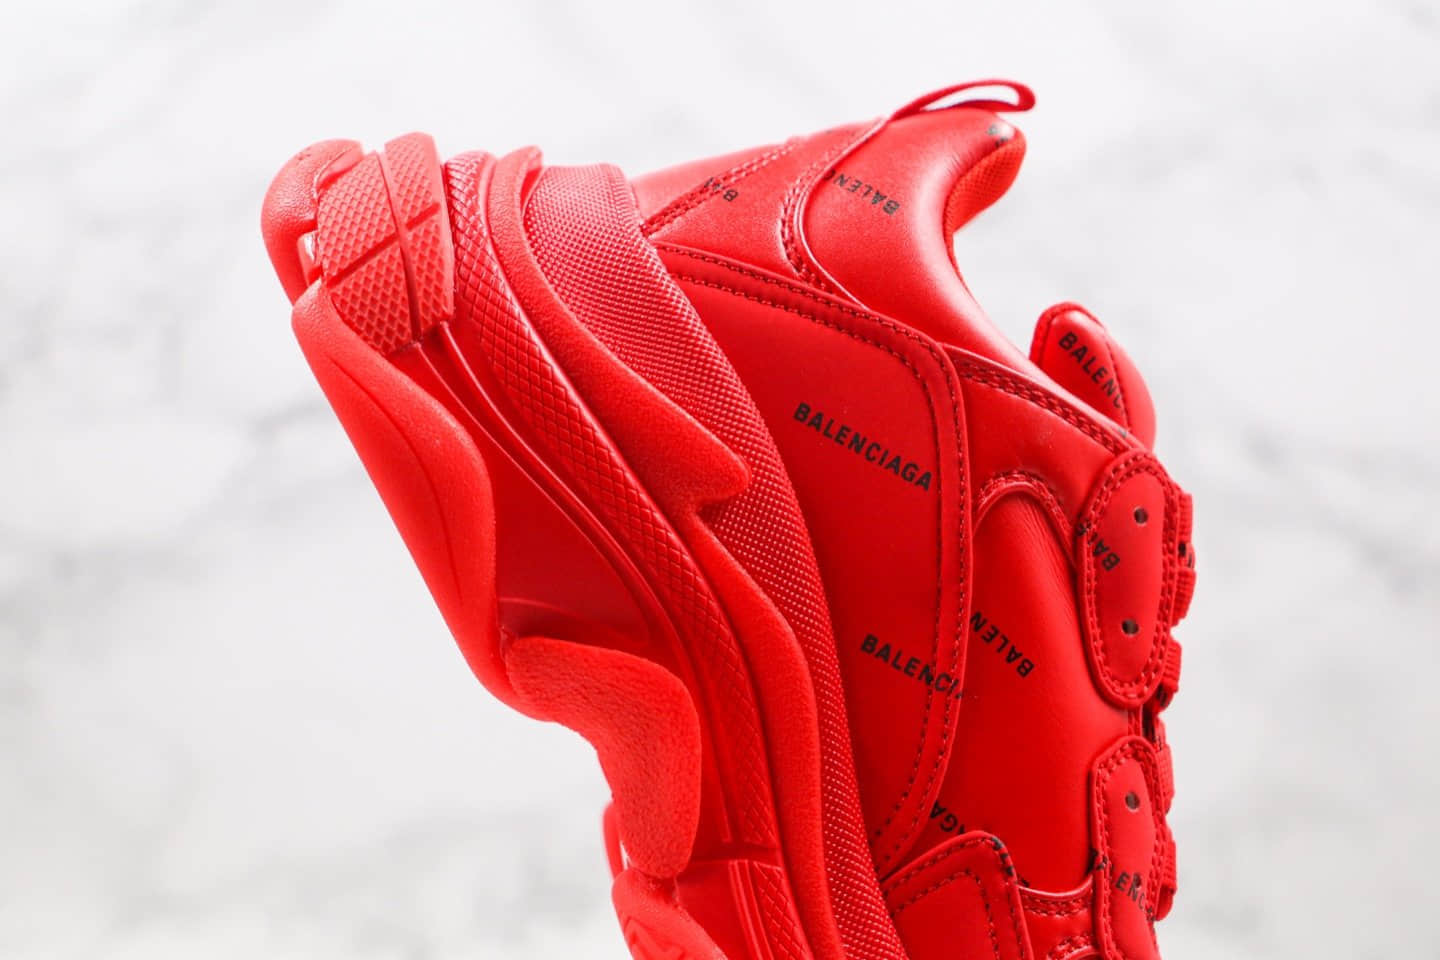 巴黎世家Balenciaga Triple S纯原版本复古老爹鞋字母弹幕大红色原盒配件齐全